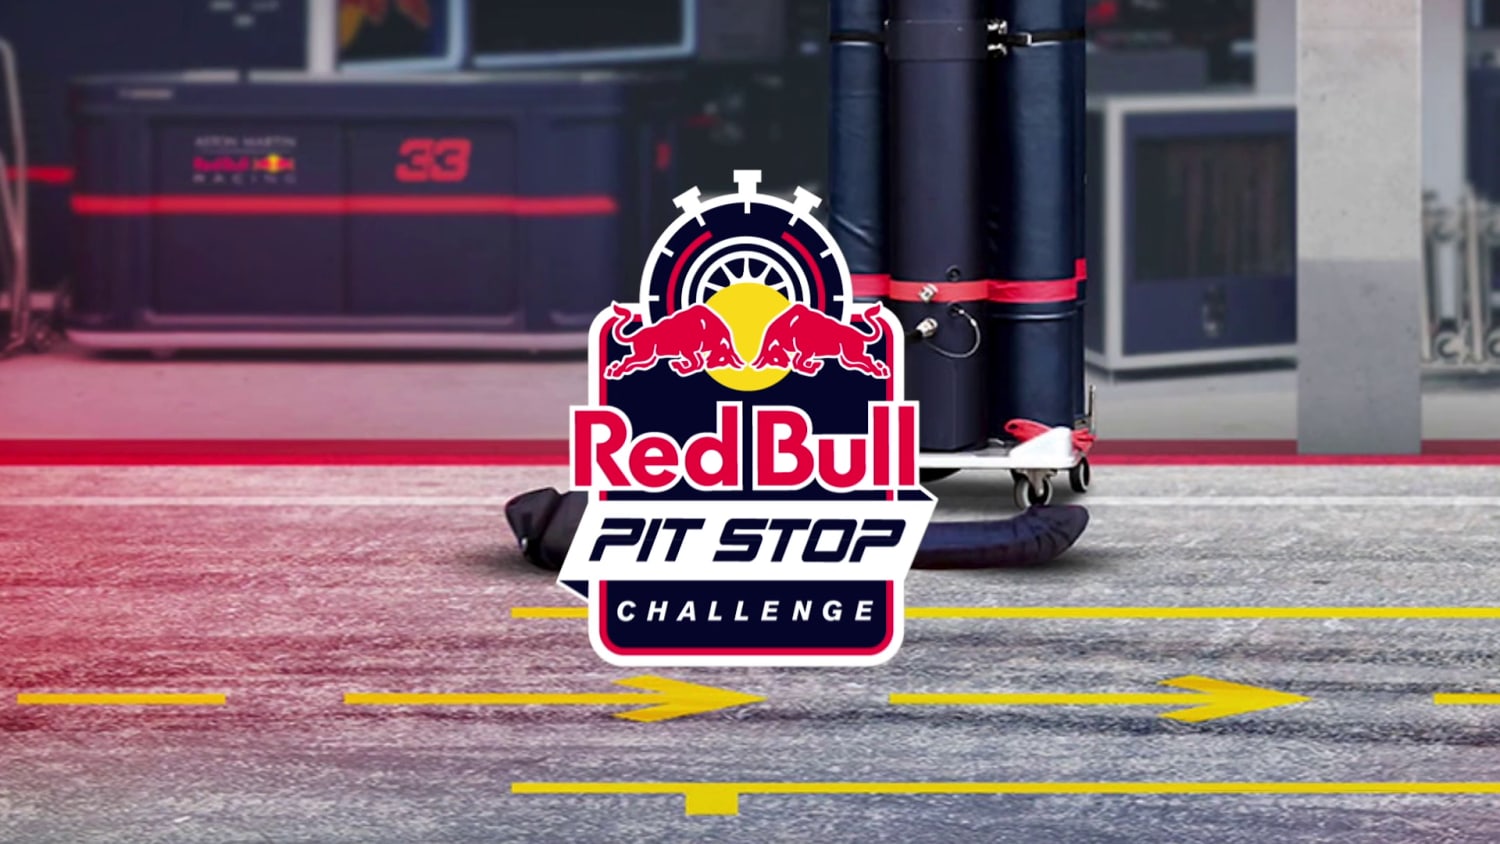 Måne Måltid plan Red Bull Pit Stop challenge 2021: Start your engines!